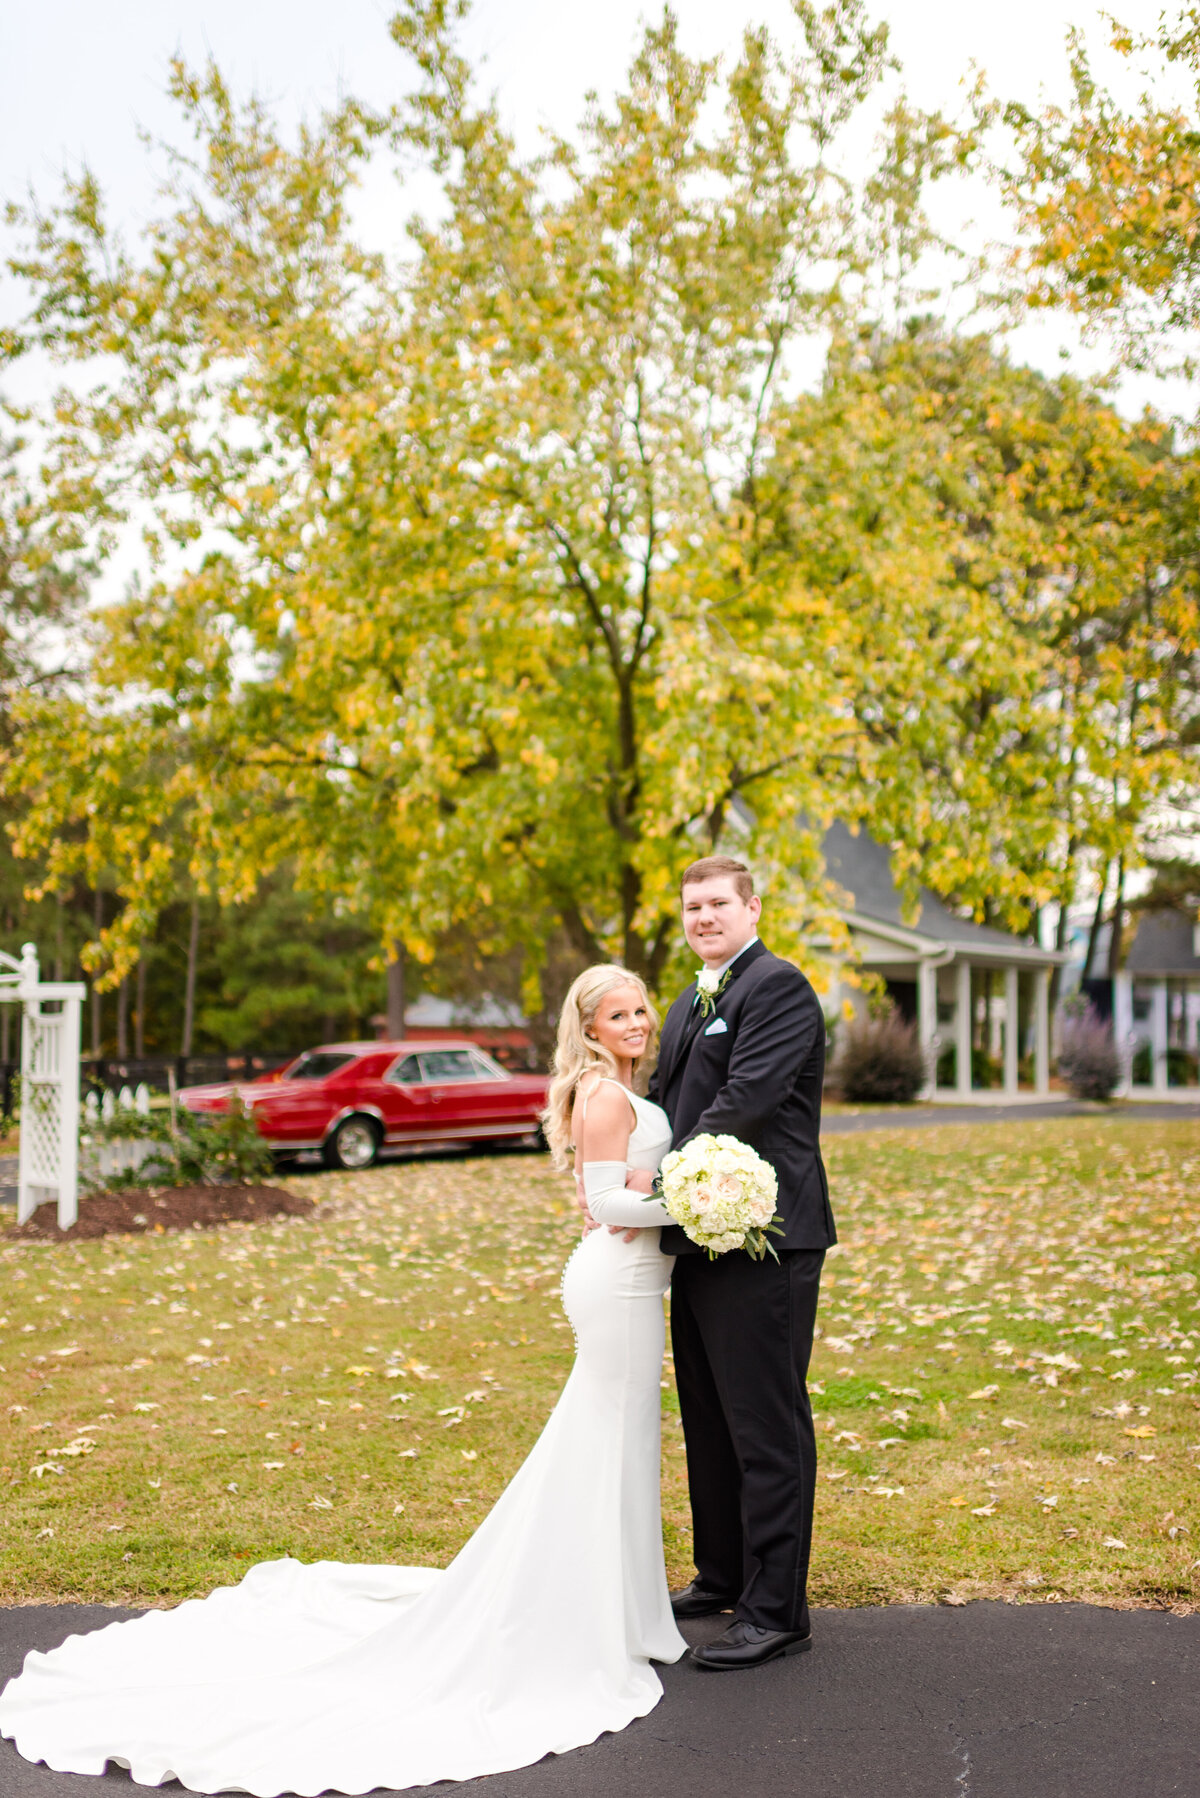 Katie + Tanner Wedding - Photography by Gerri Anna-597